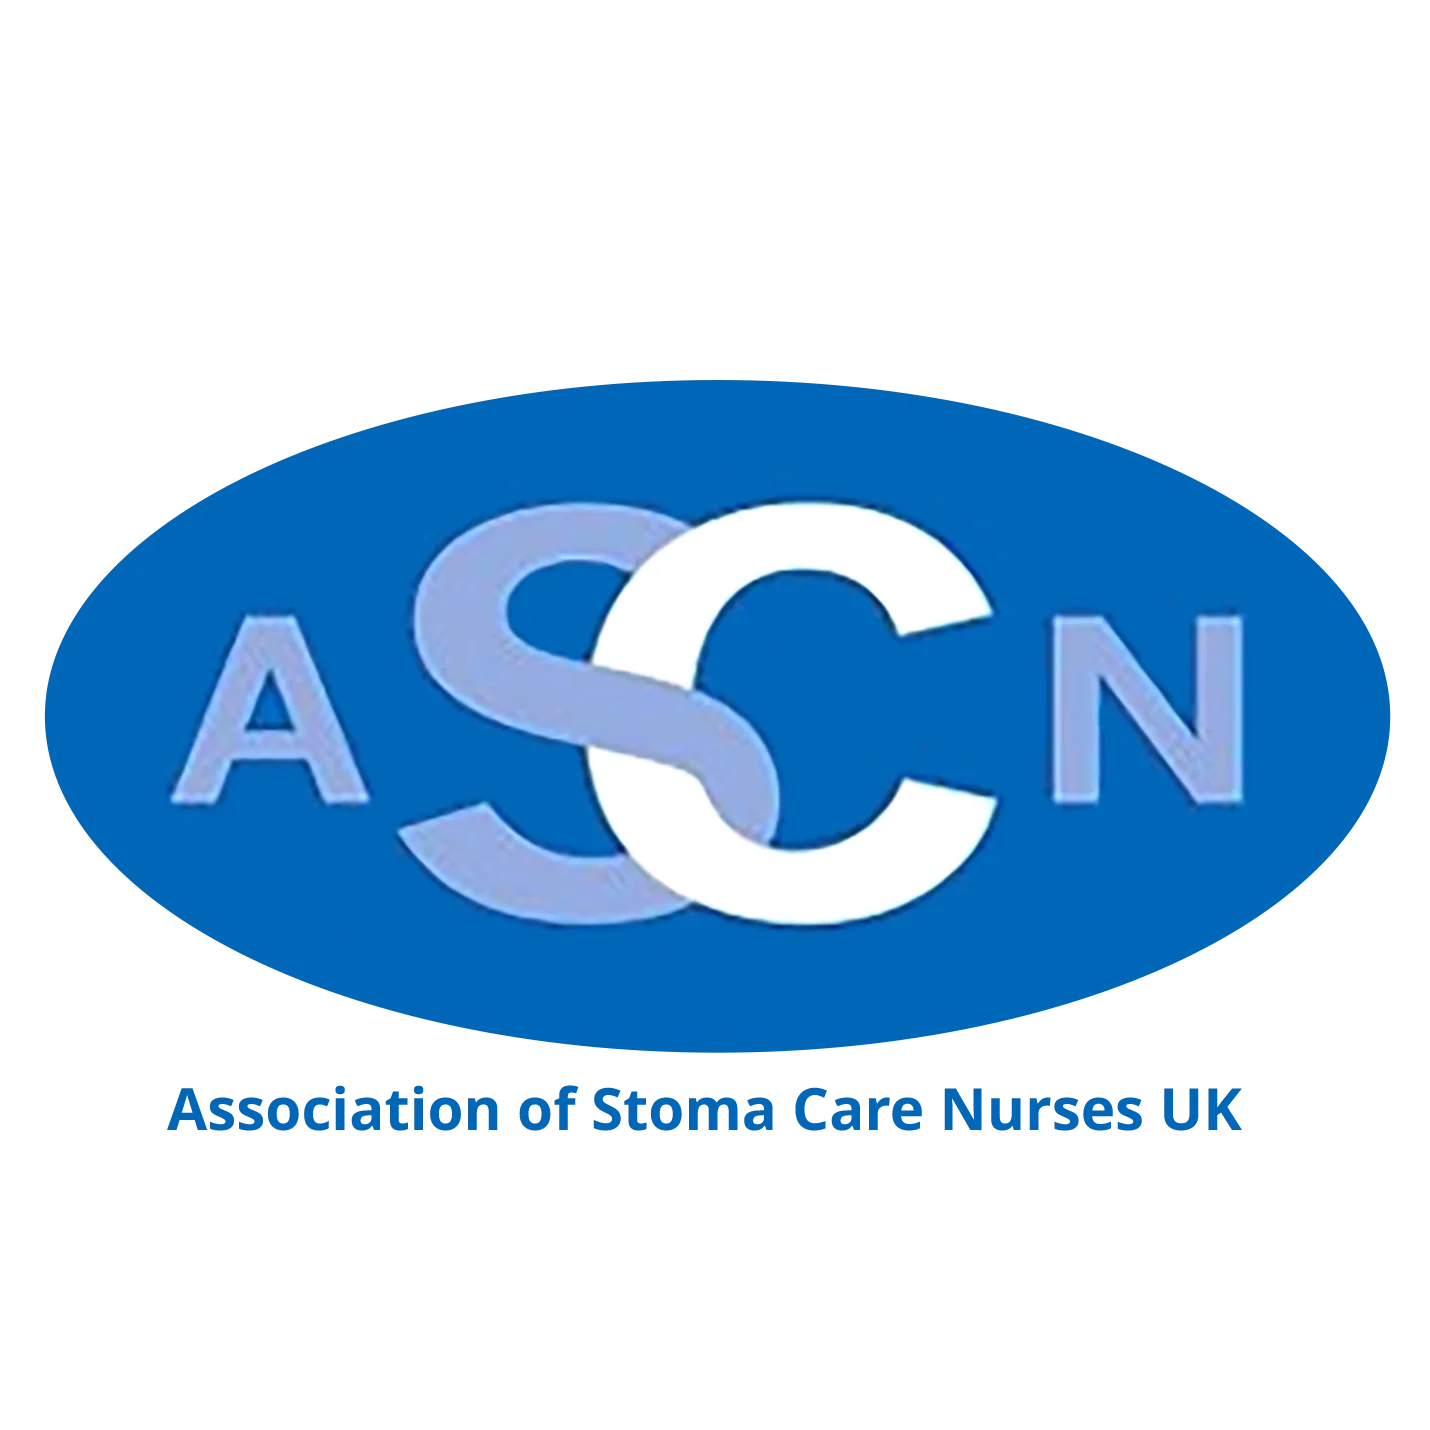 ASCN Logo